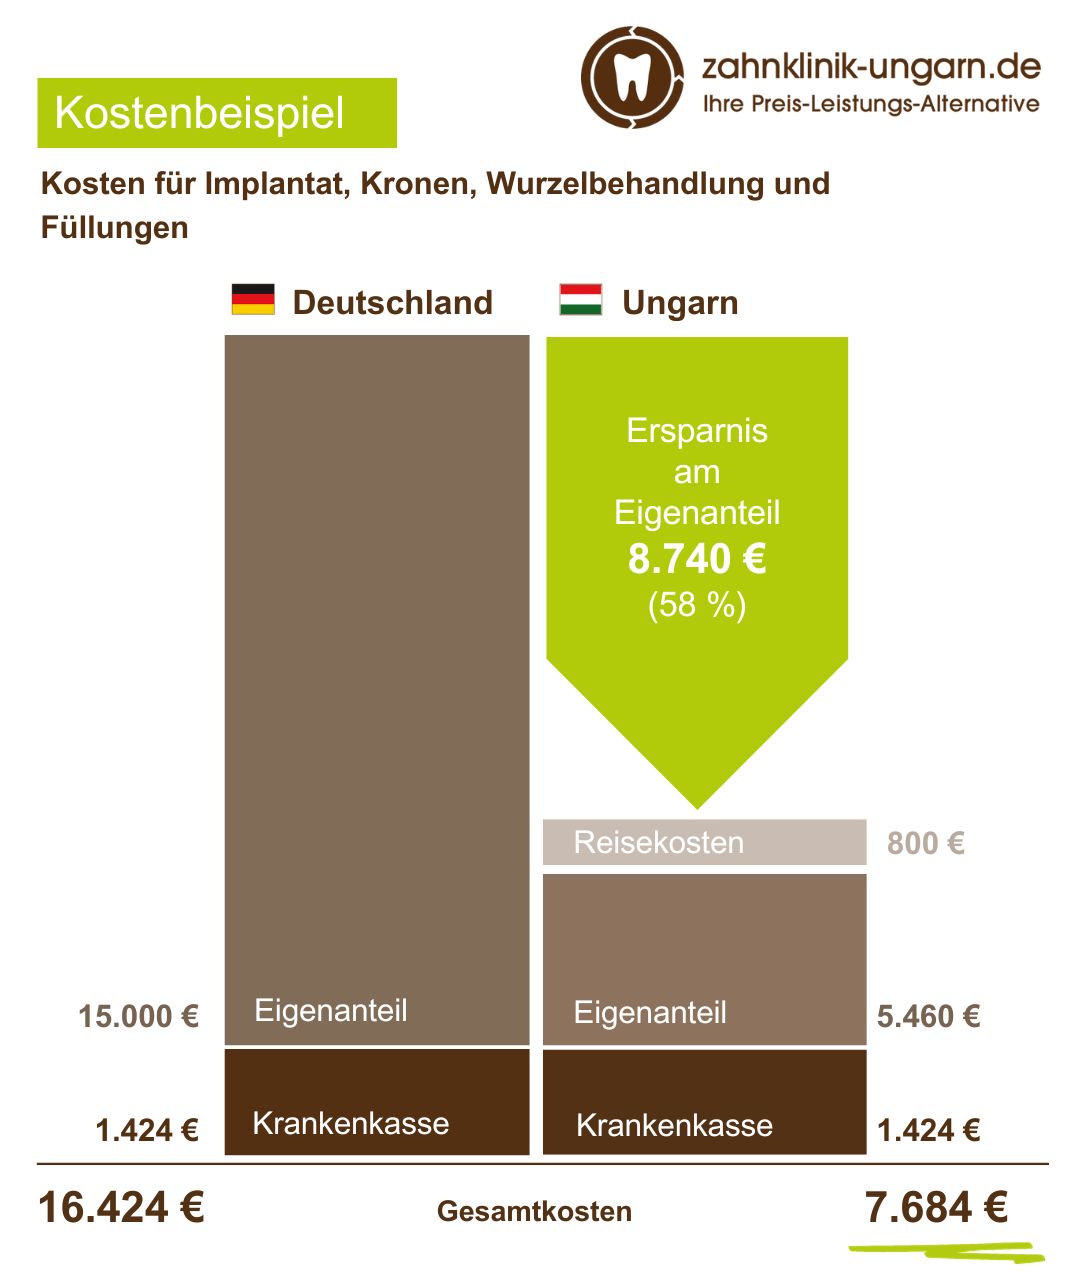 Kosten für Implantat, Kronen, Wurzelbehandlung und Füllungen, Schaubild mit Kostenvergleich Ungarn und Deutschland